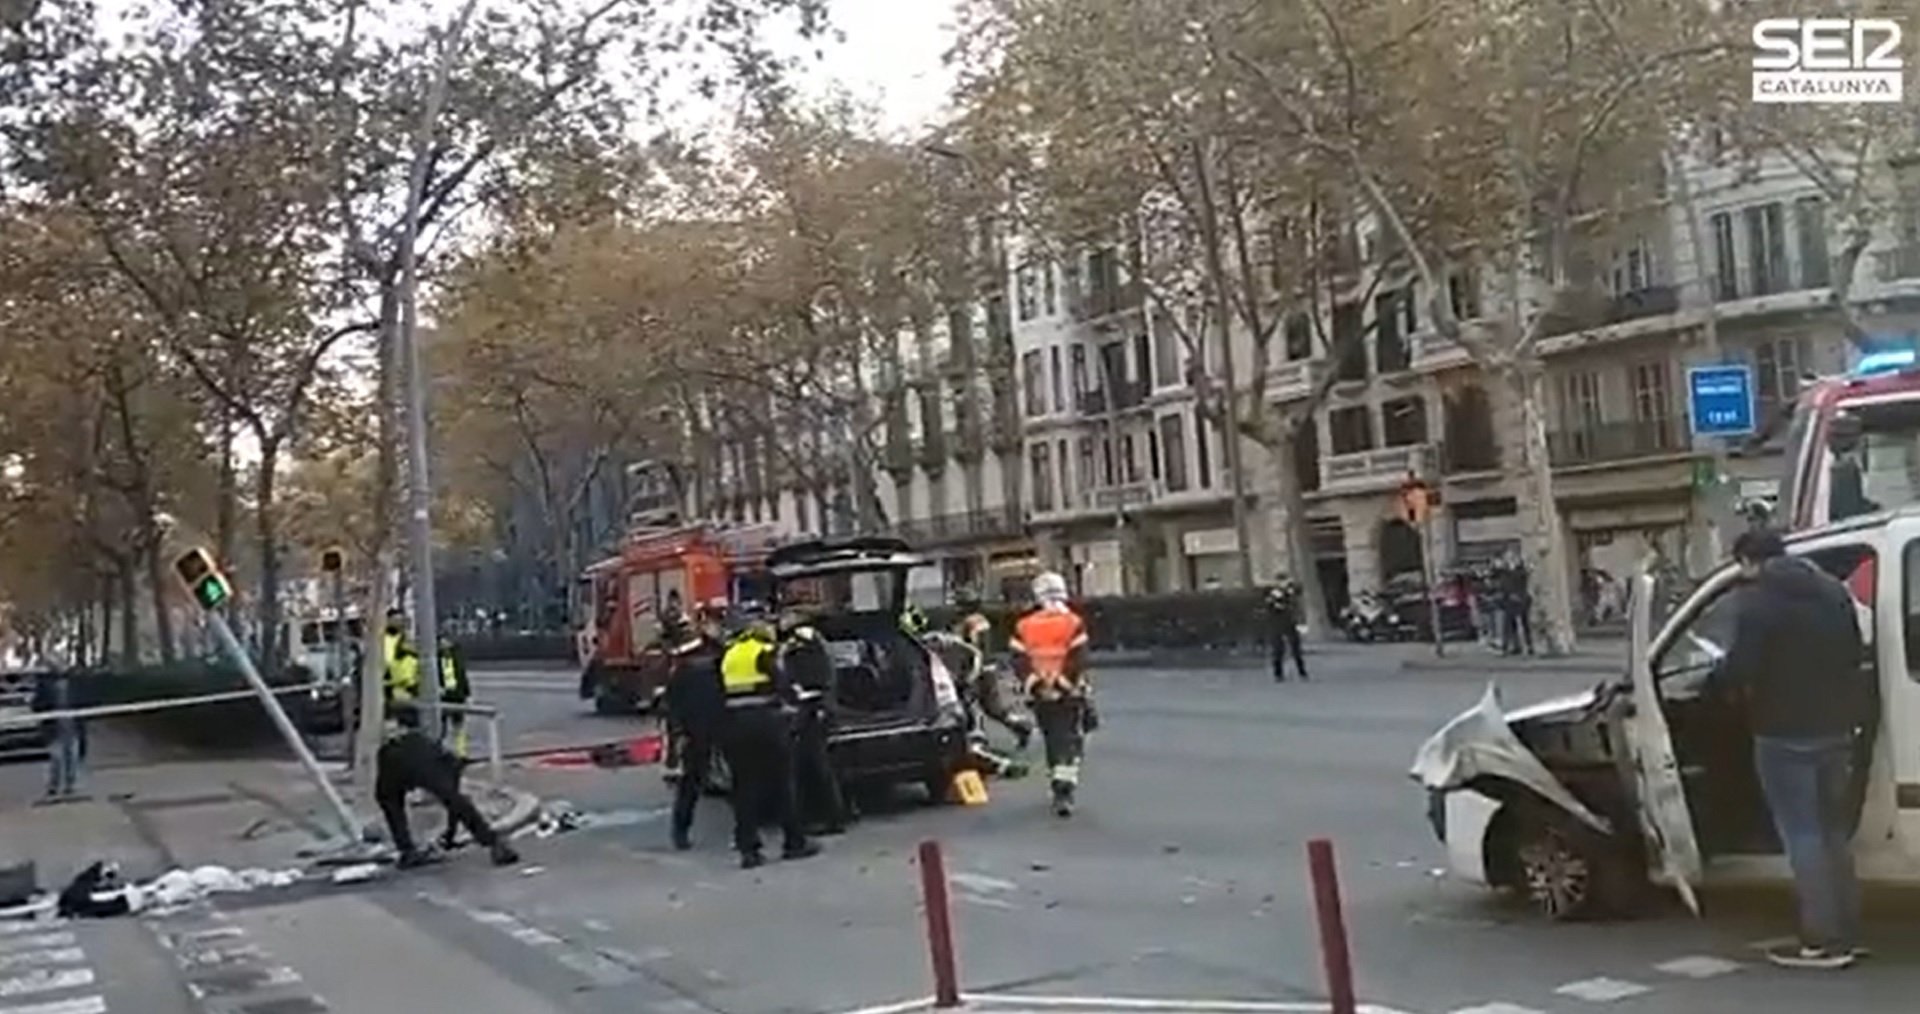 Greu accident a la Gran Via de Barcelona: tres vehicles implicats i un ferit